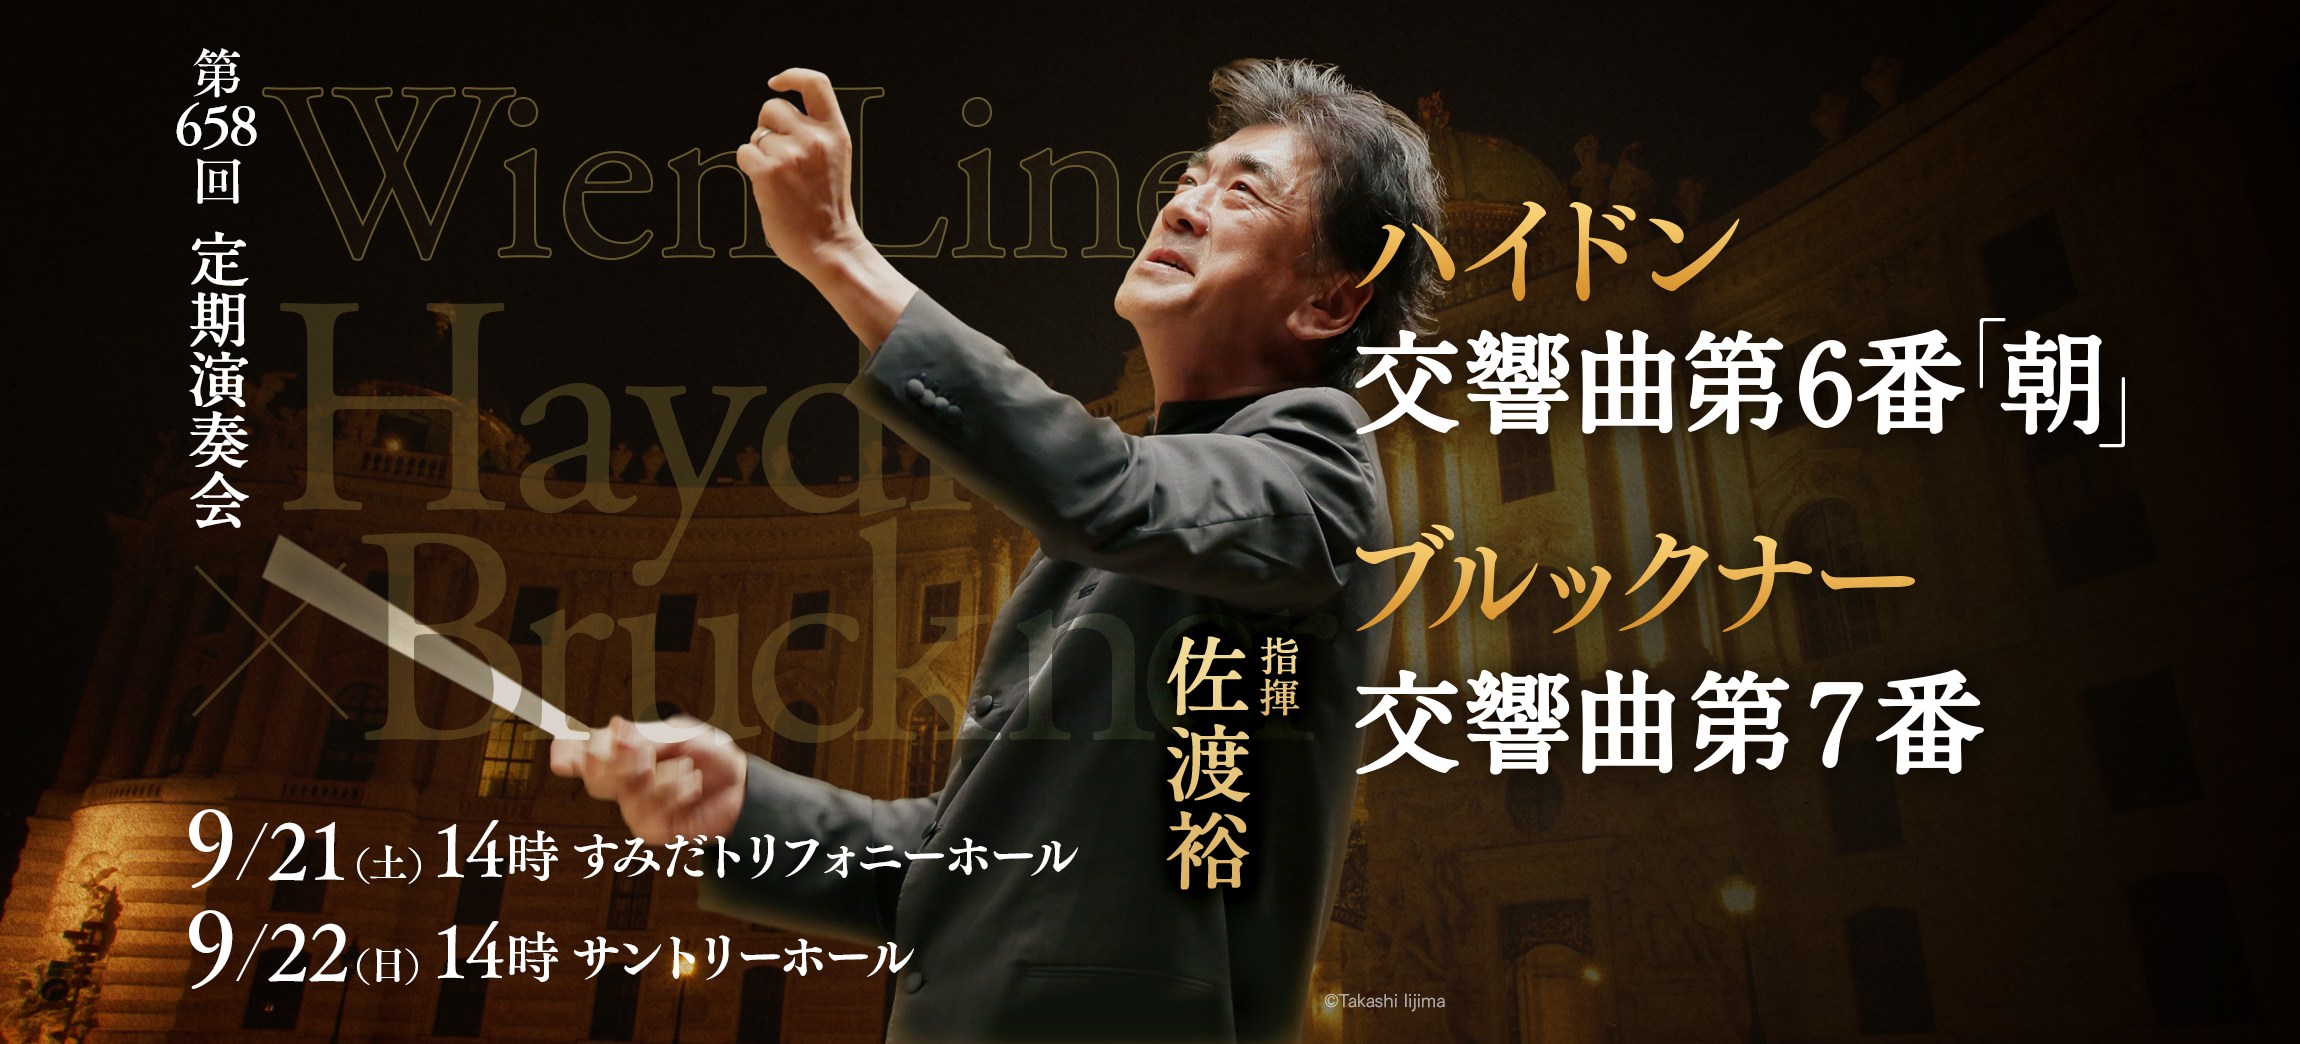 新日本フィルハーモニー交響楽団#658〈サントリーホール・シリーズ〉のフライヤー画像